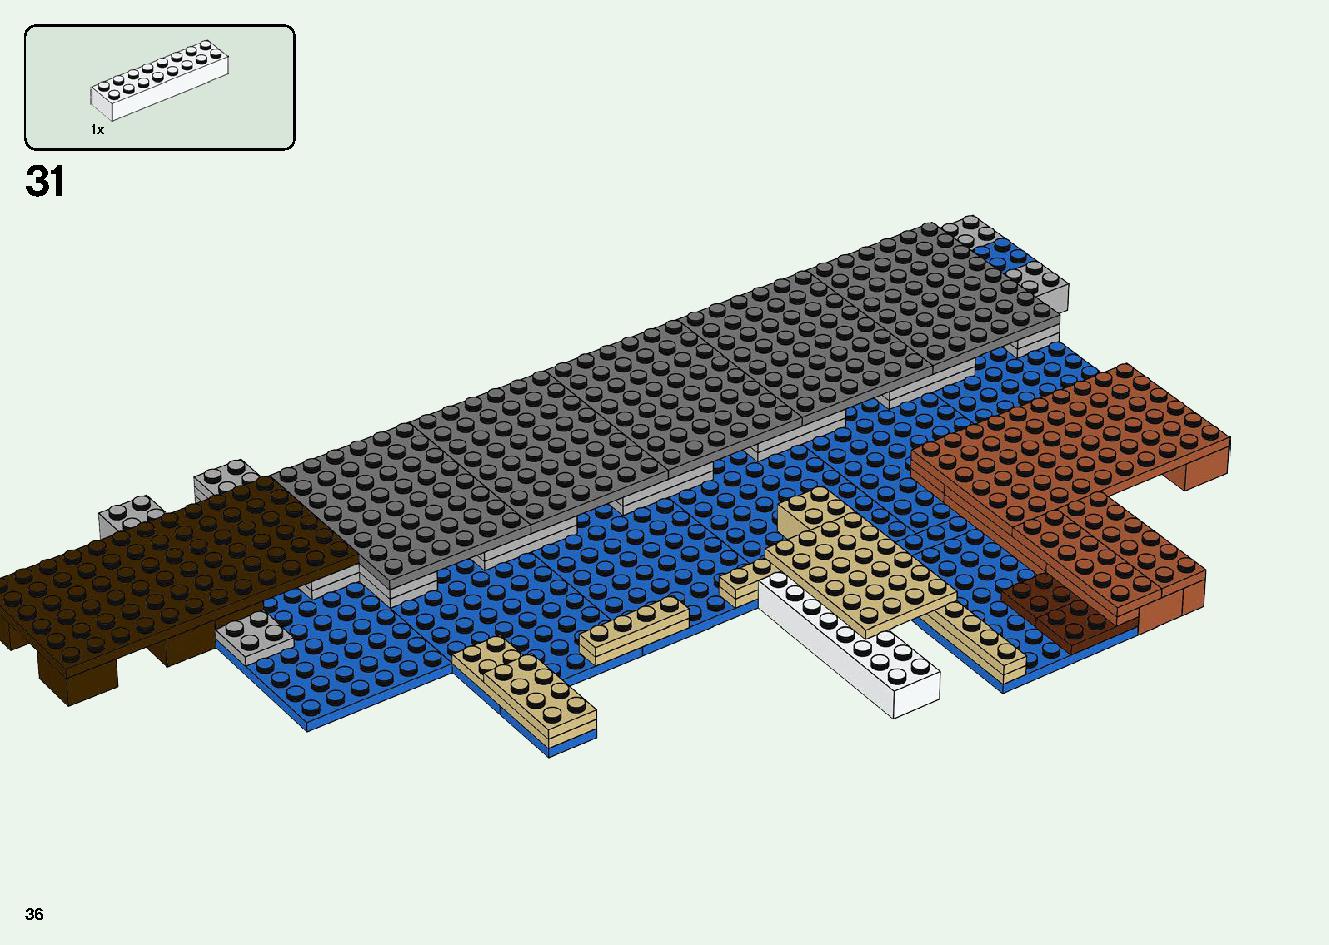 巨大クリーパー像の鉱山 21155 レゴの商品情報 レゴの説明書・組立方法 36 page